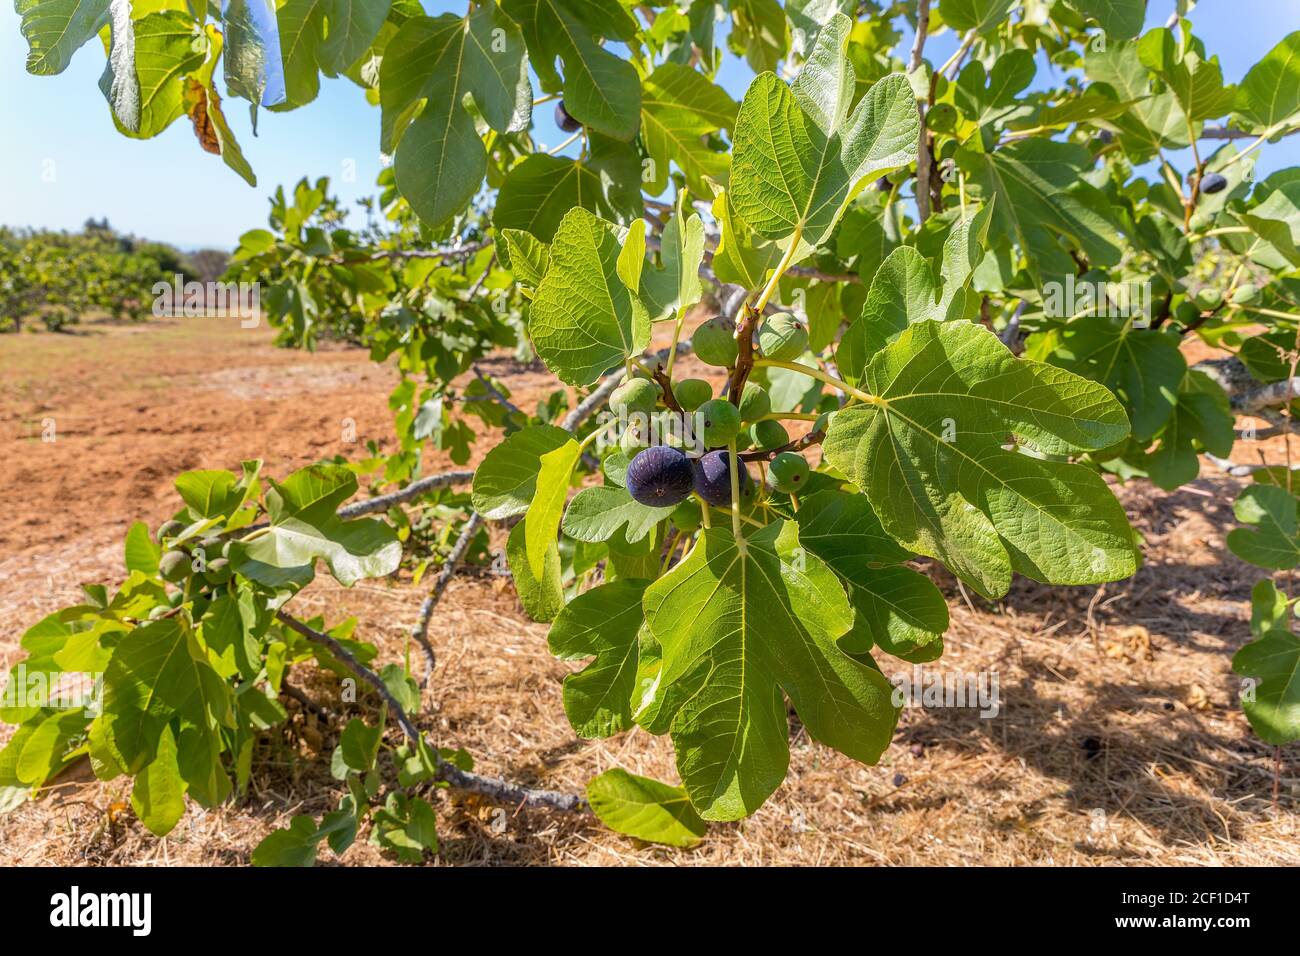 Gruppo di fichi come frutti appesi ai rami di fico con foglie in frutteto portoghese Foto Stock